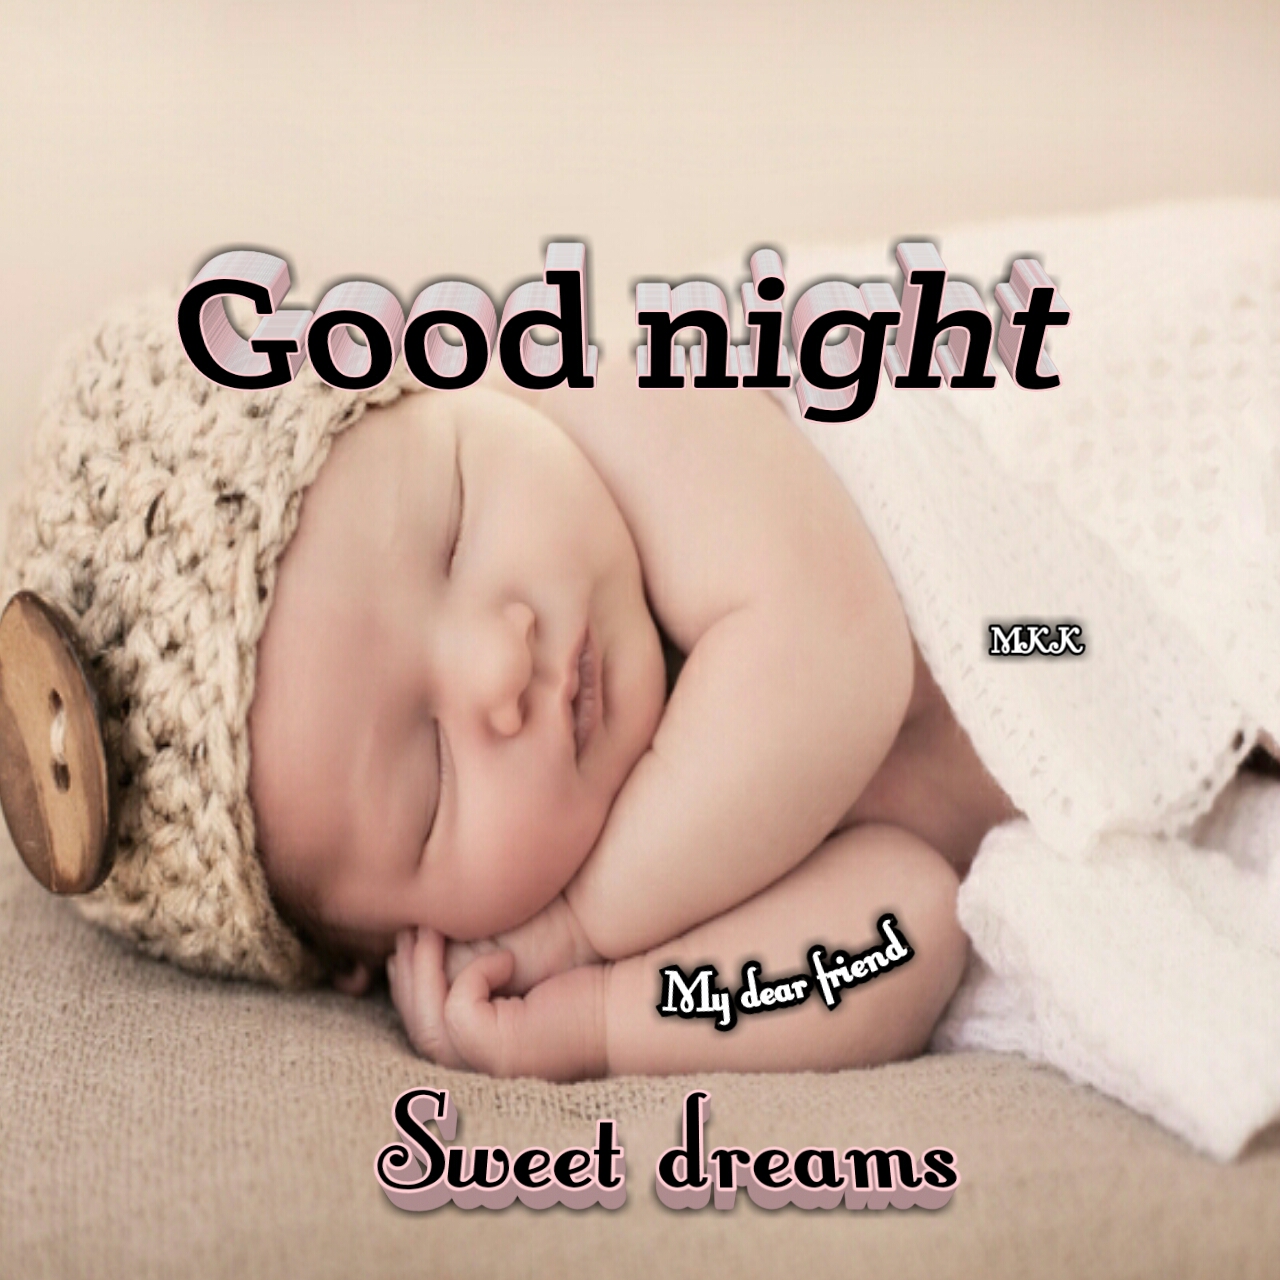 ️ good night baby ️ Images • Kalyani (@akalyani) on ShareChat